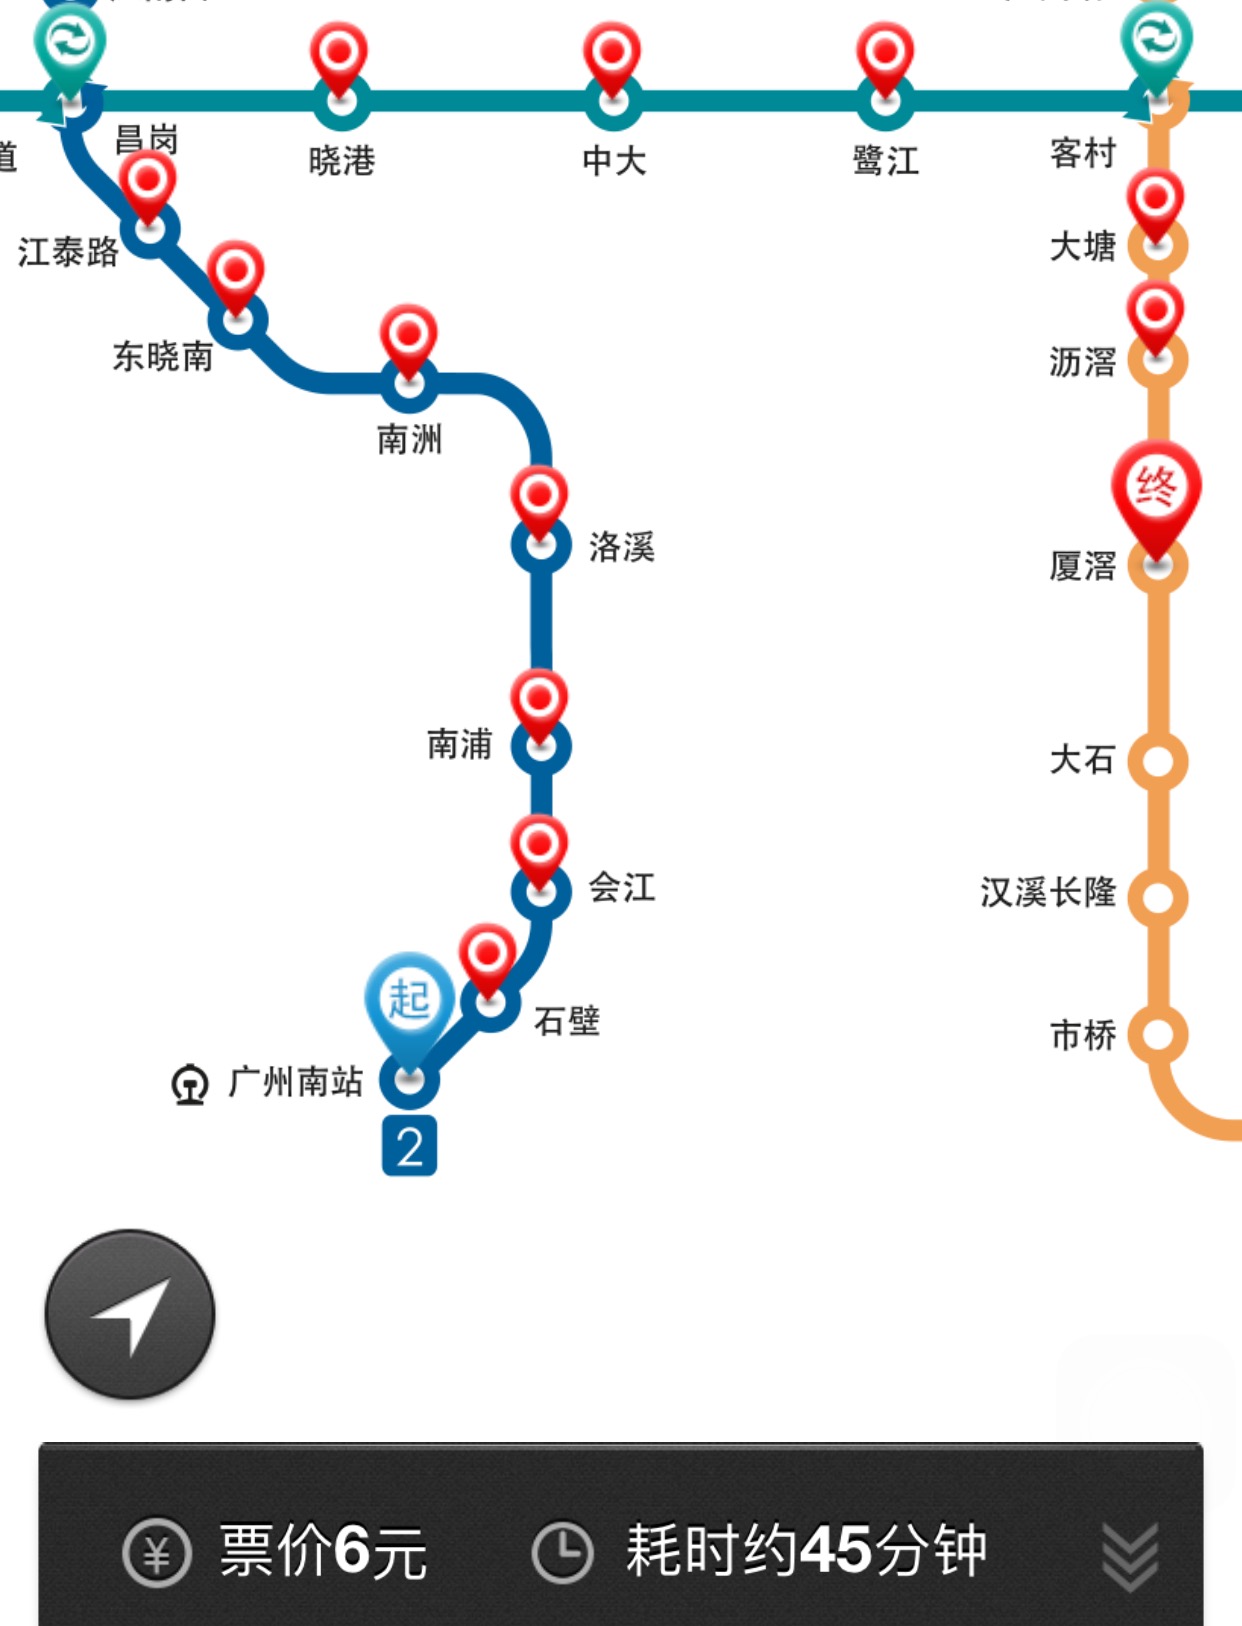 广州2号地铁线路图_百度知道